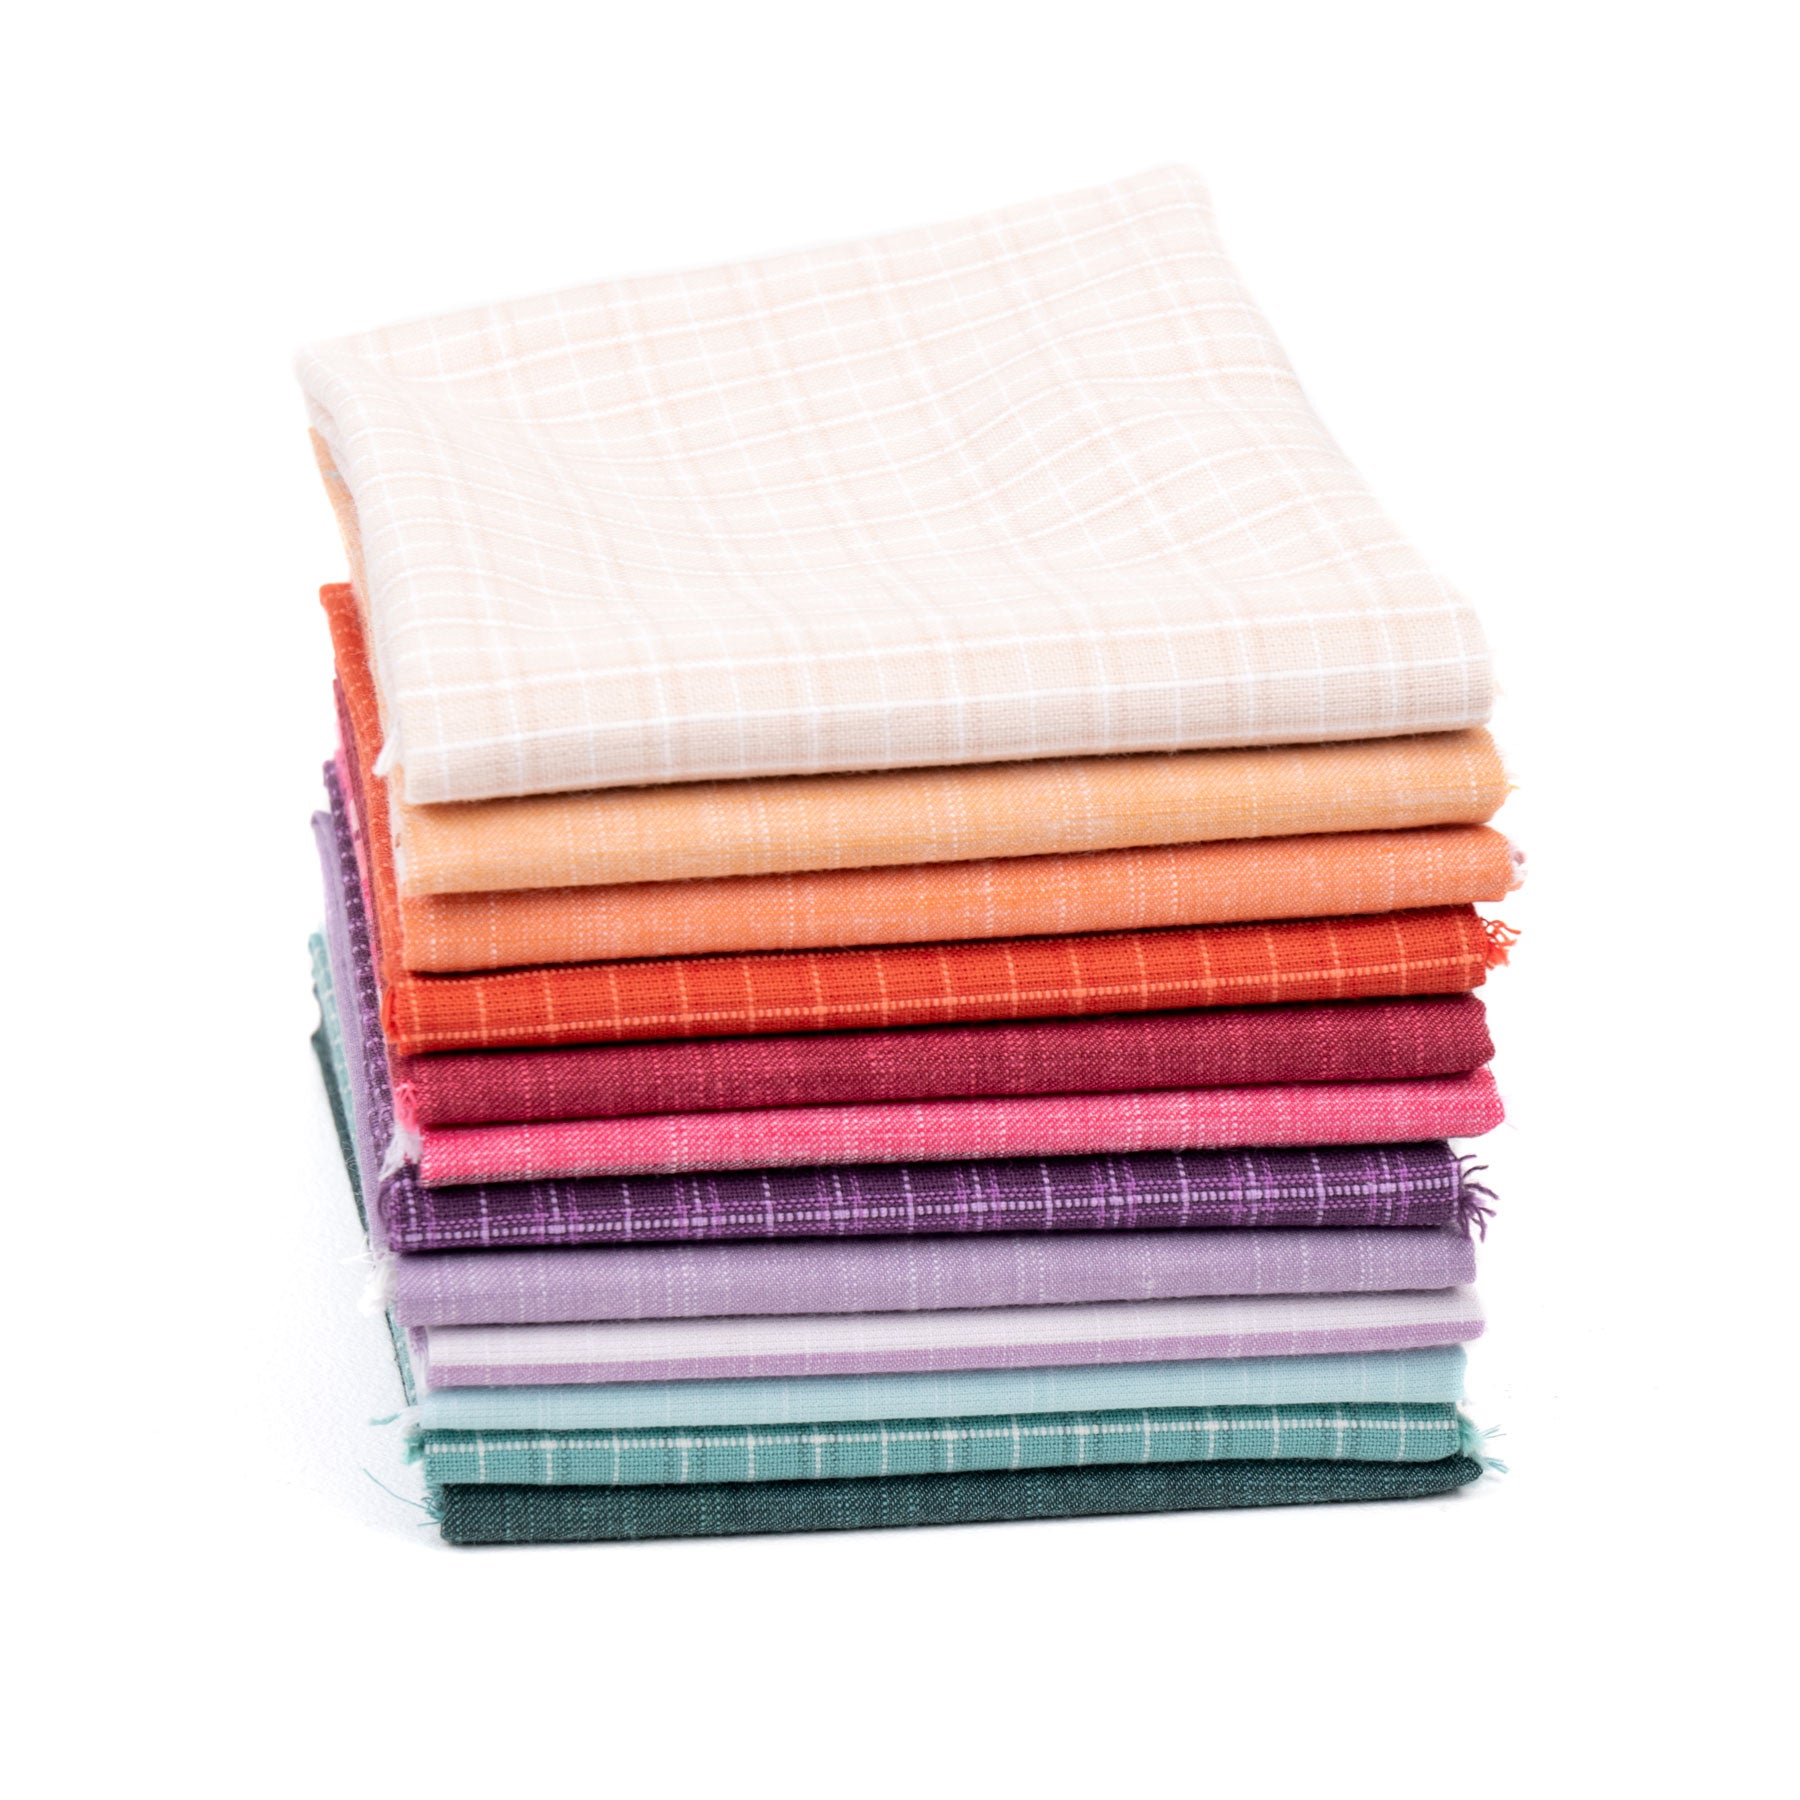 Quilt Fabric Precuts & Bundles